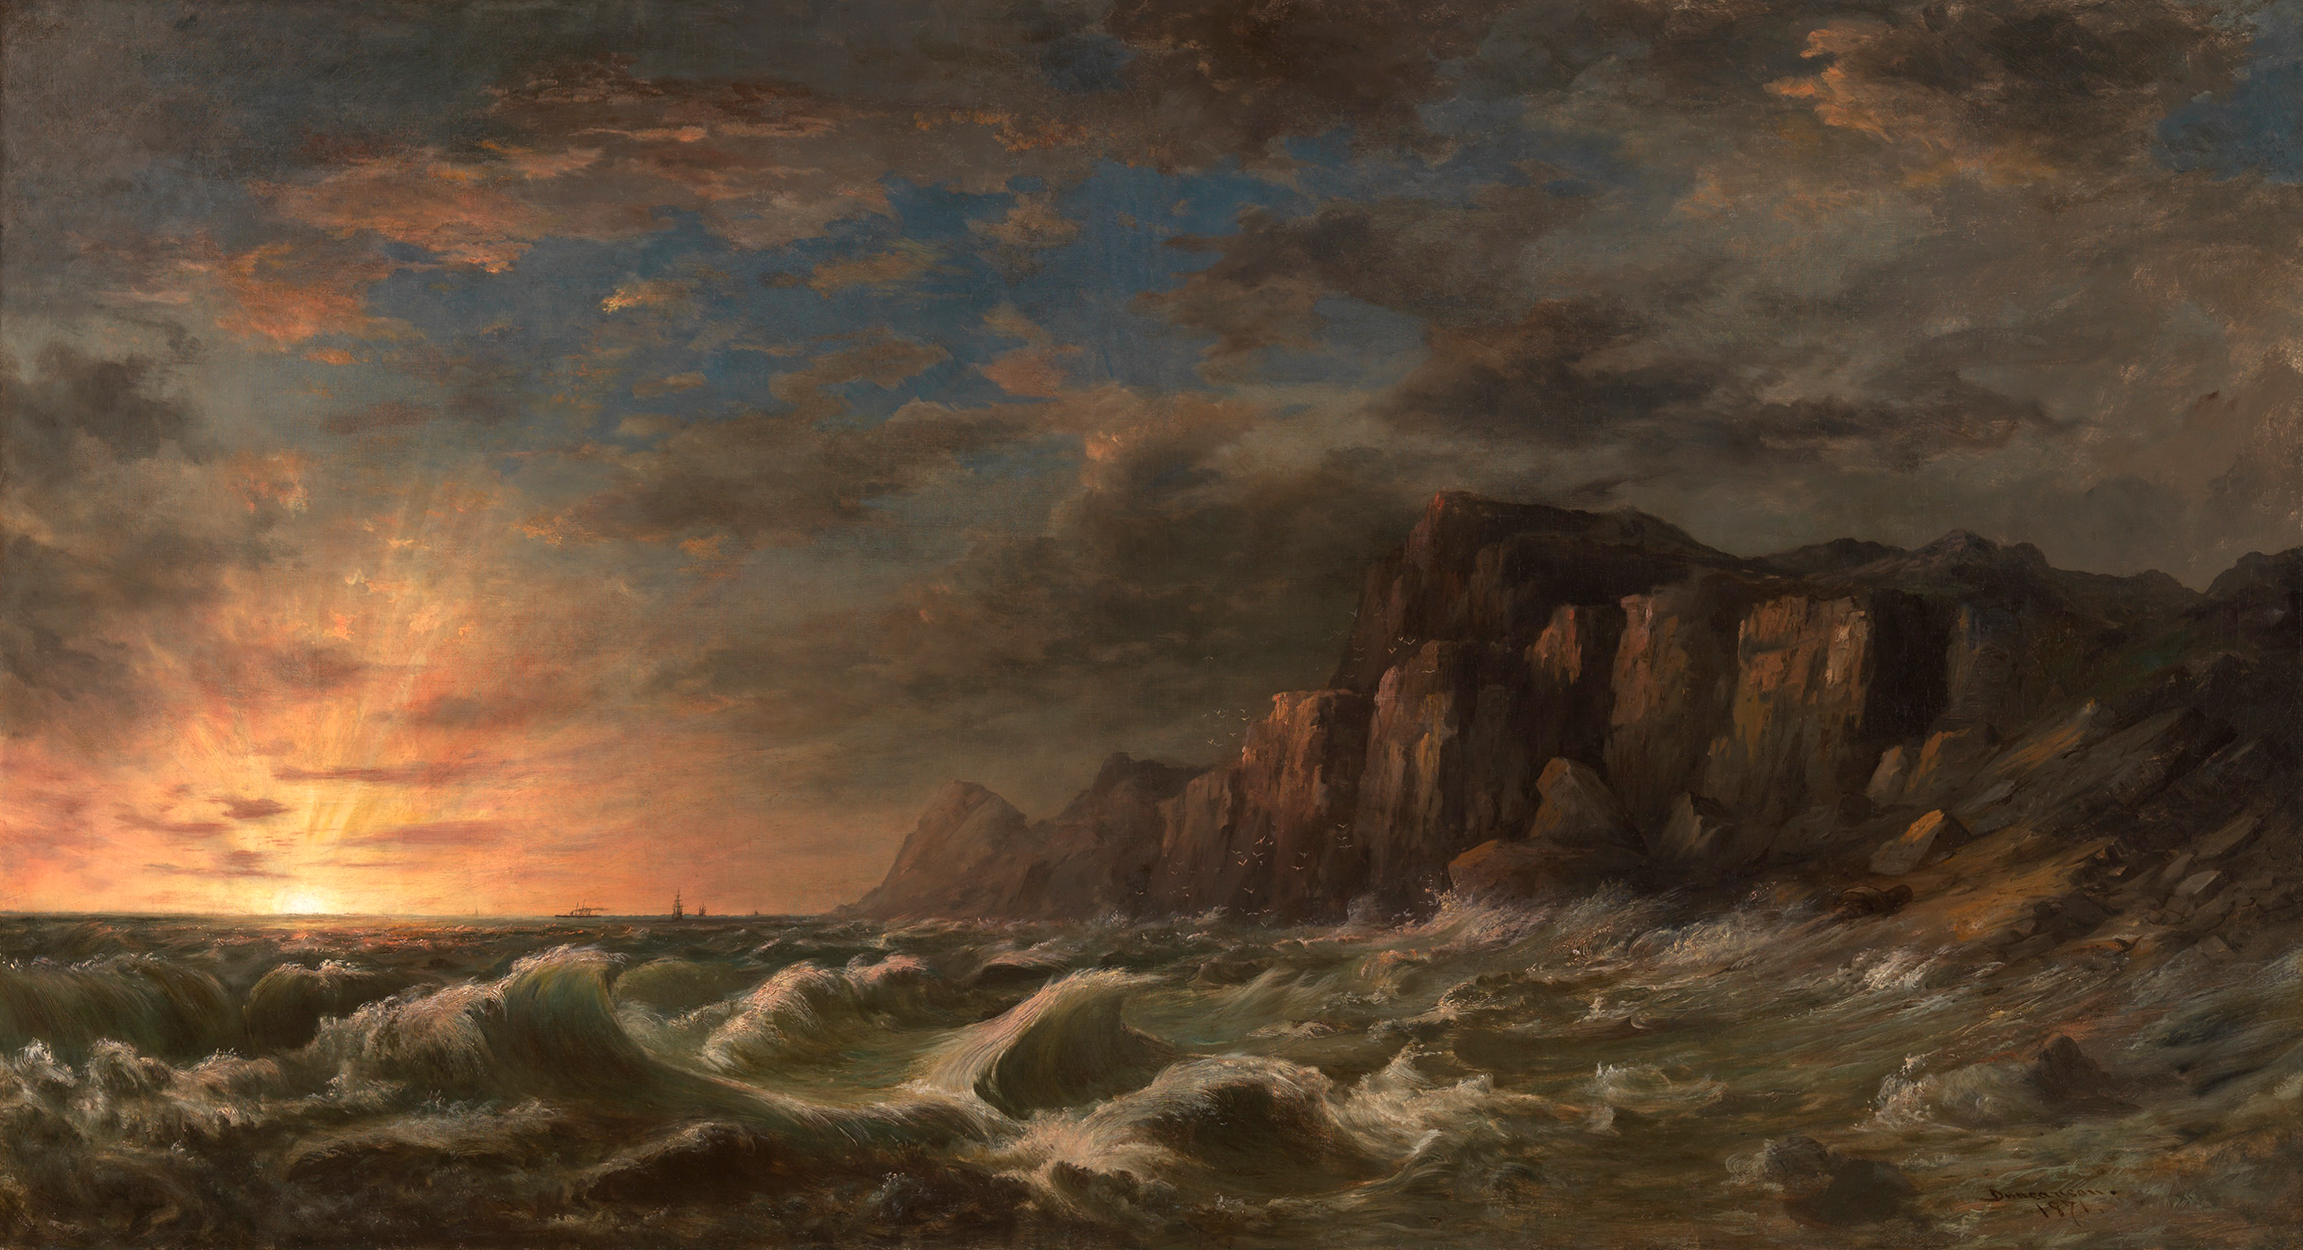 뉴 잉글랜드 해안의 일몰 (Sunset on the New England Coast) by Robert Duncanson - 1871 - 92 x 169.5 cm 